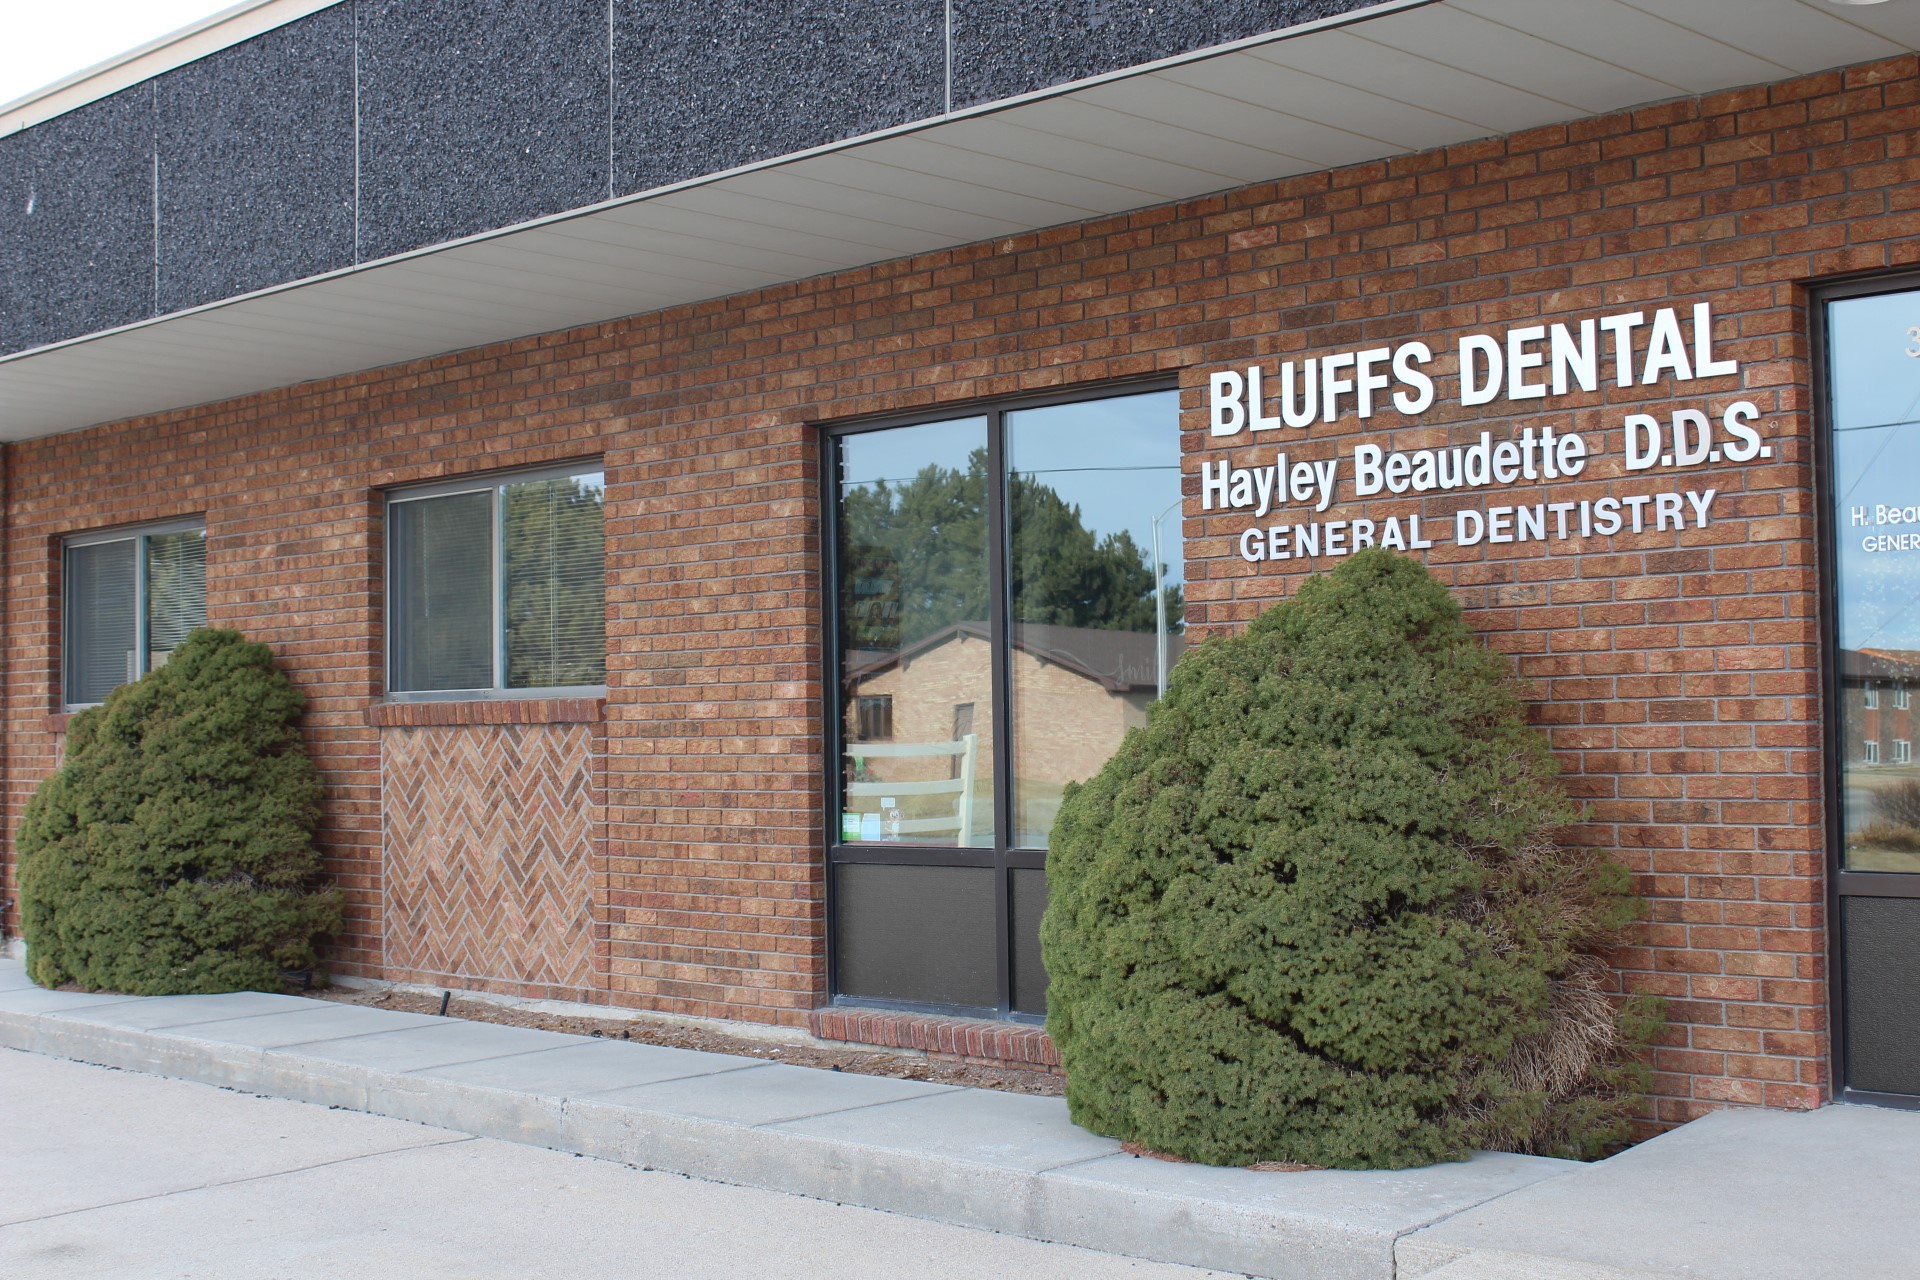 Bluffs Dental office exterior